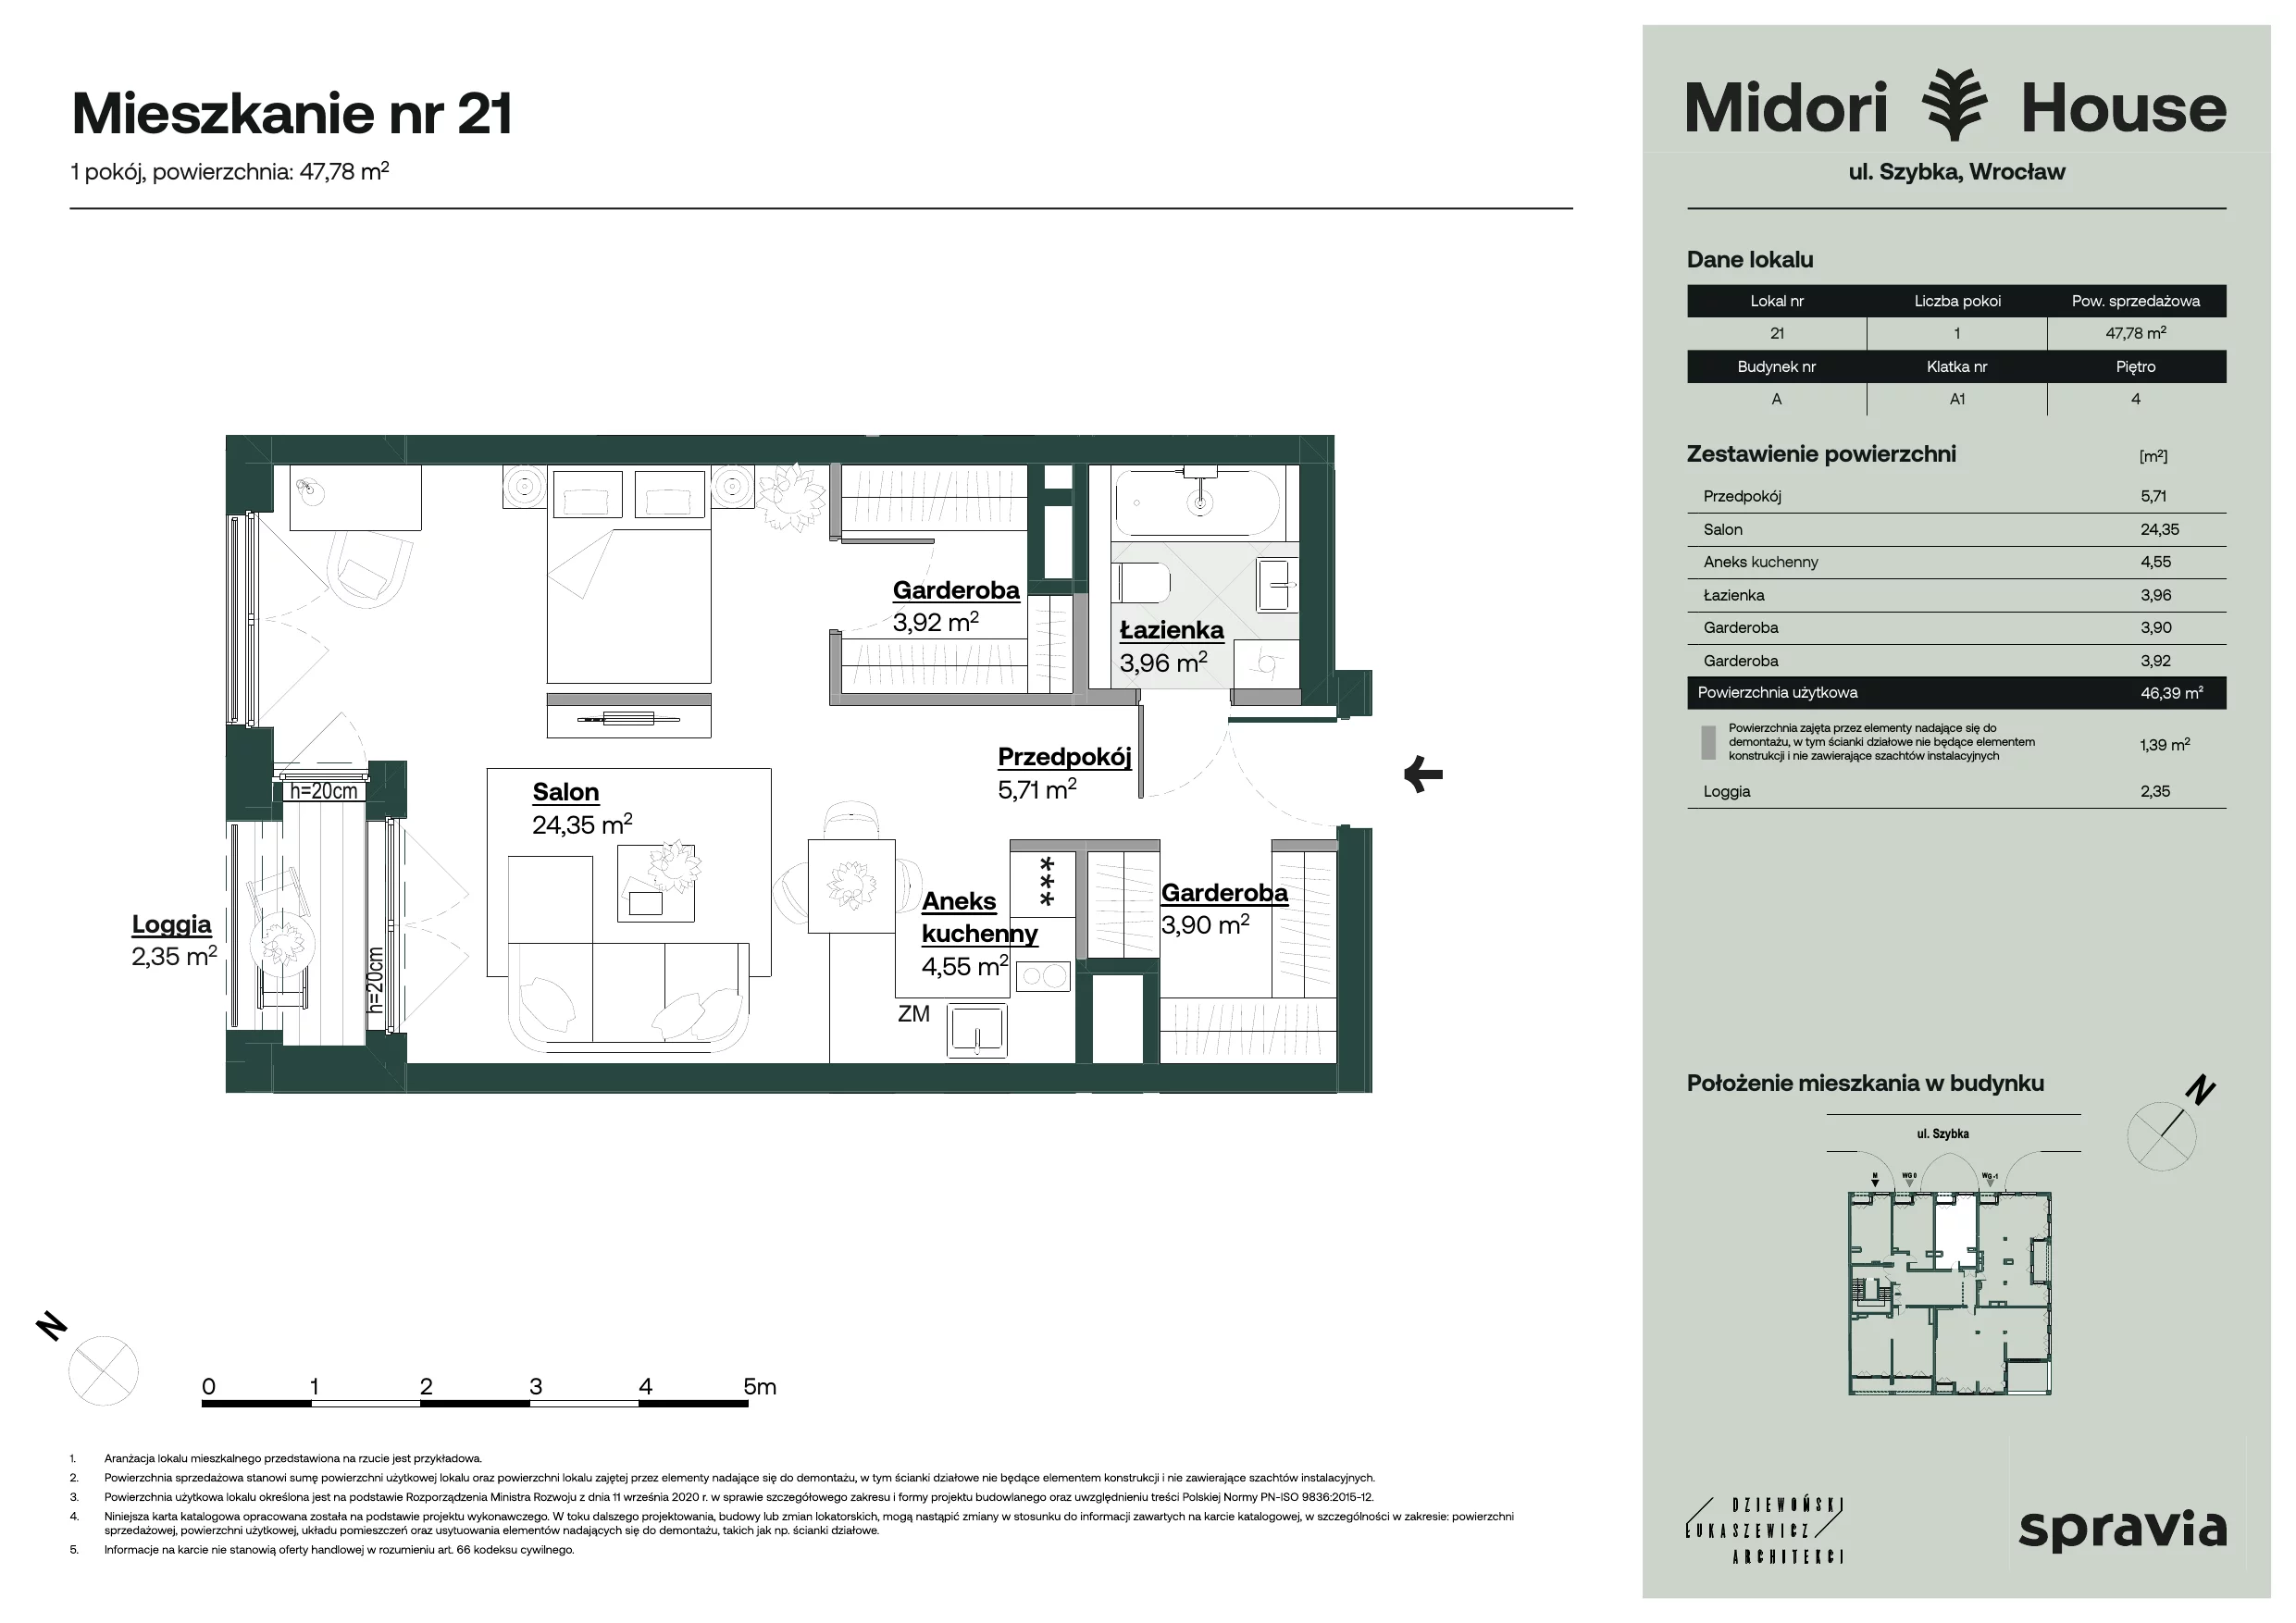 Apartament 47,78 m², piętro 4, oferta nr 21, Midori House, Wrocław, Przedmieście Oławskie, ul. Szybka 9